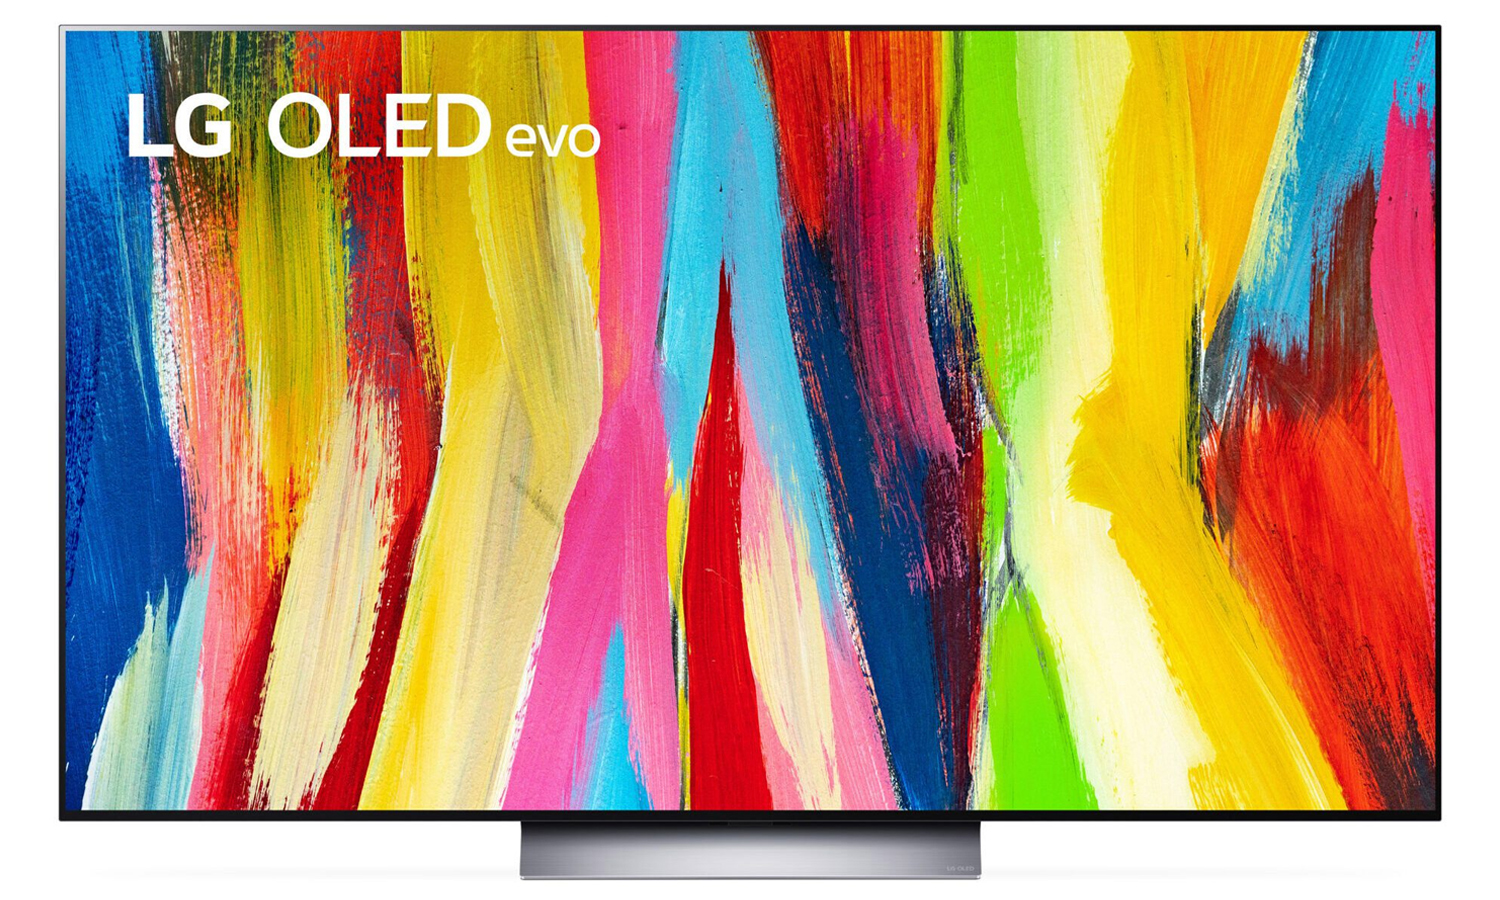 LG OLED TVs